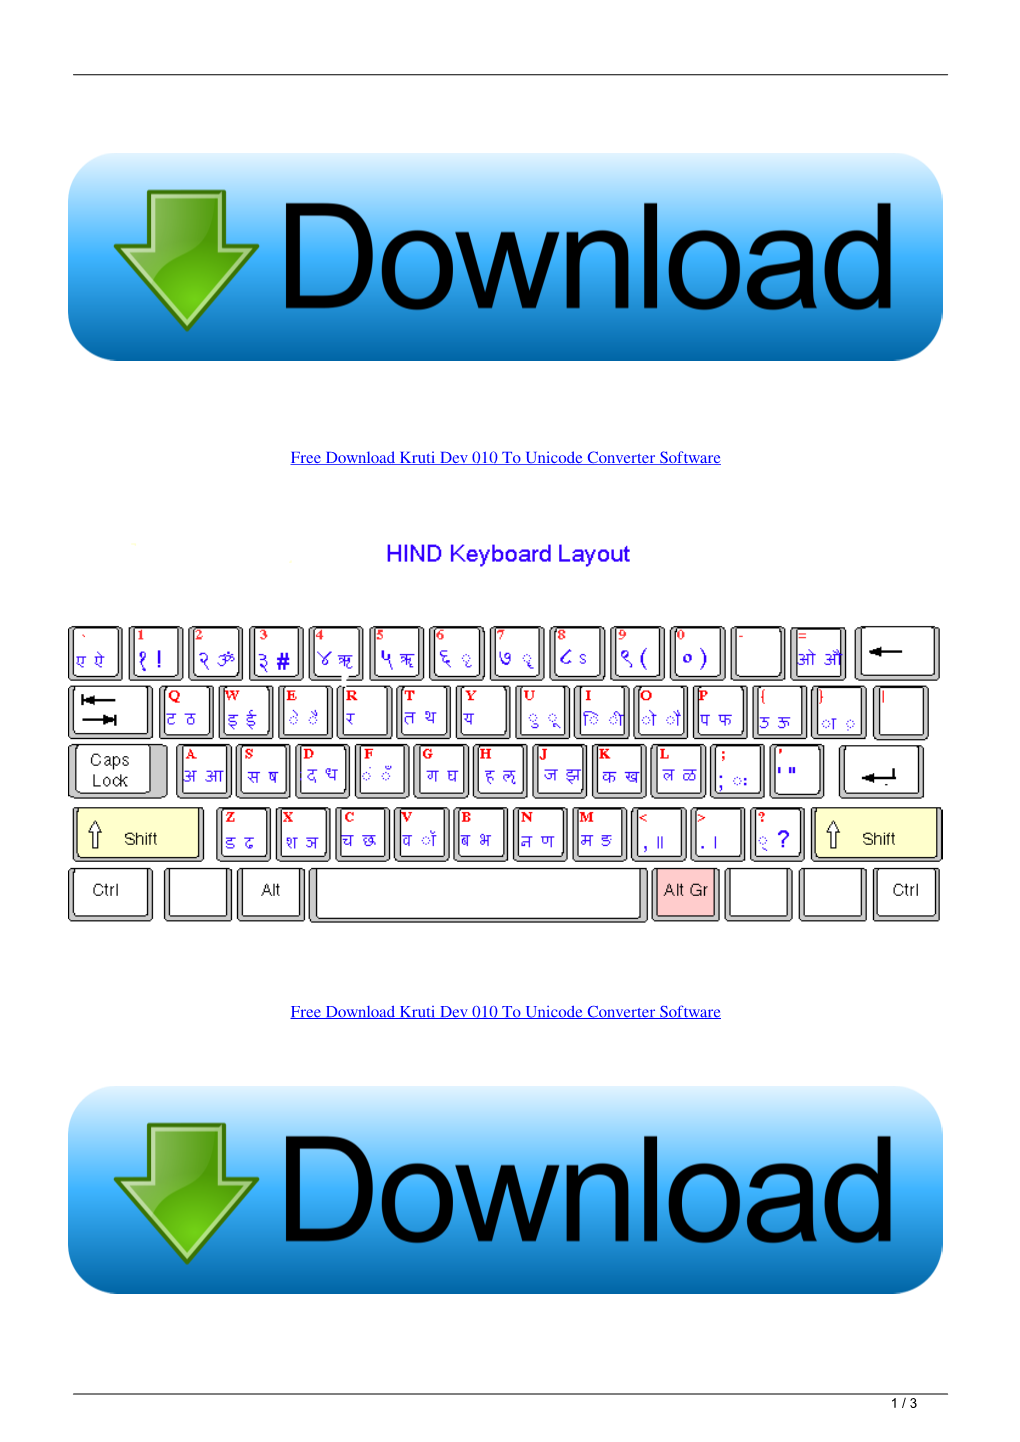 Free Download Kruti Dev 010 to Unicode Converter Software